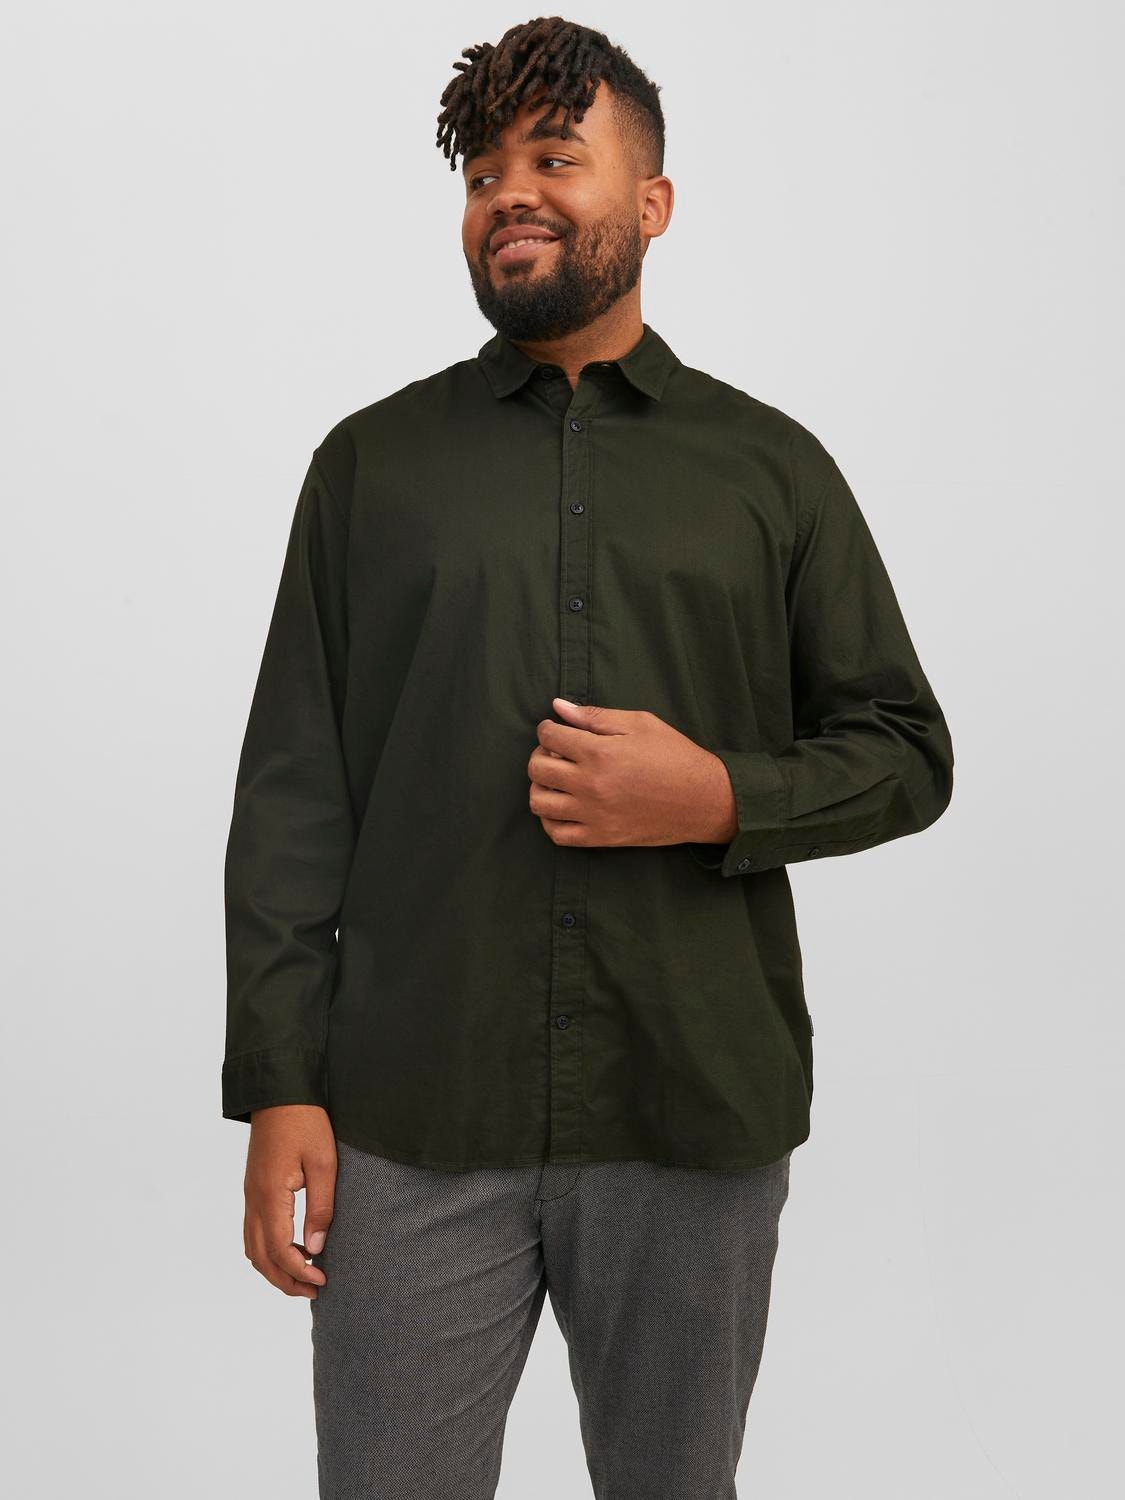 Jack & Jones Plus Size Loose Fit Geruit overhemd -Rosin - 12183107